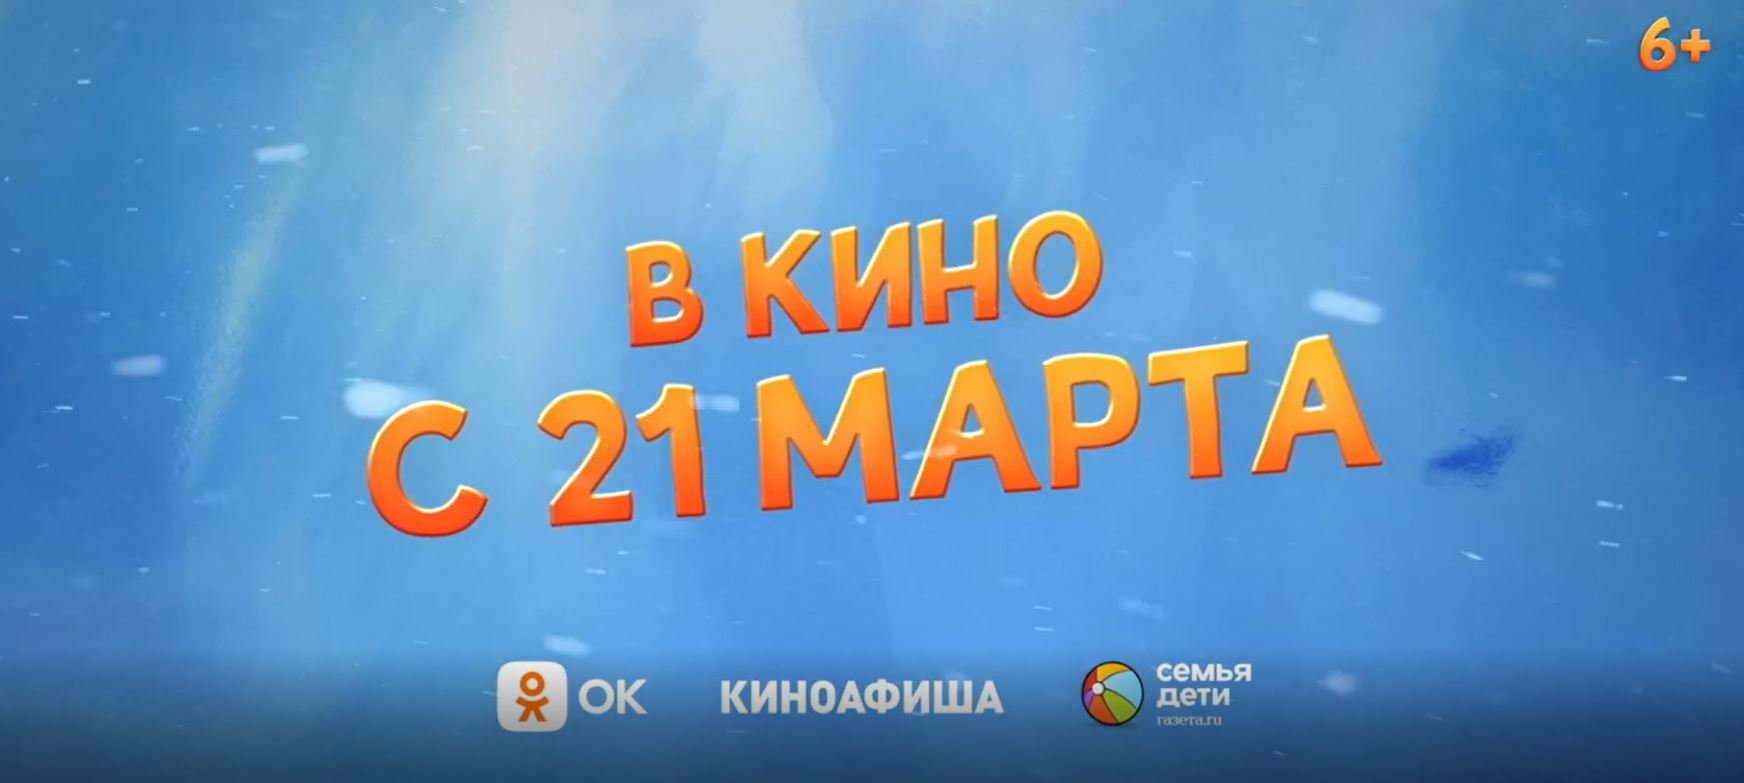 Кинозал ДК приглашает с 21 марта на мультфильм "Крутые яйца  Миссия «Пингвин»" 2D, 6+, 90 мин.